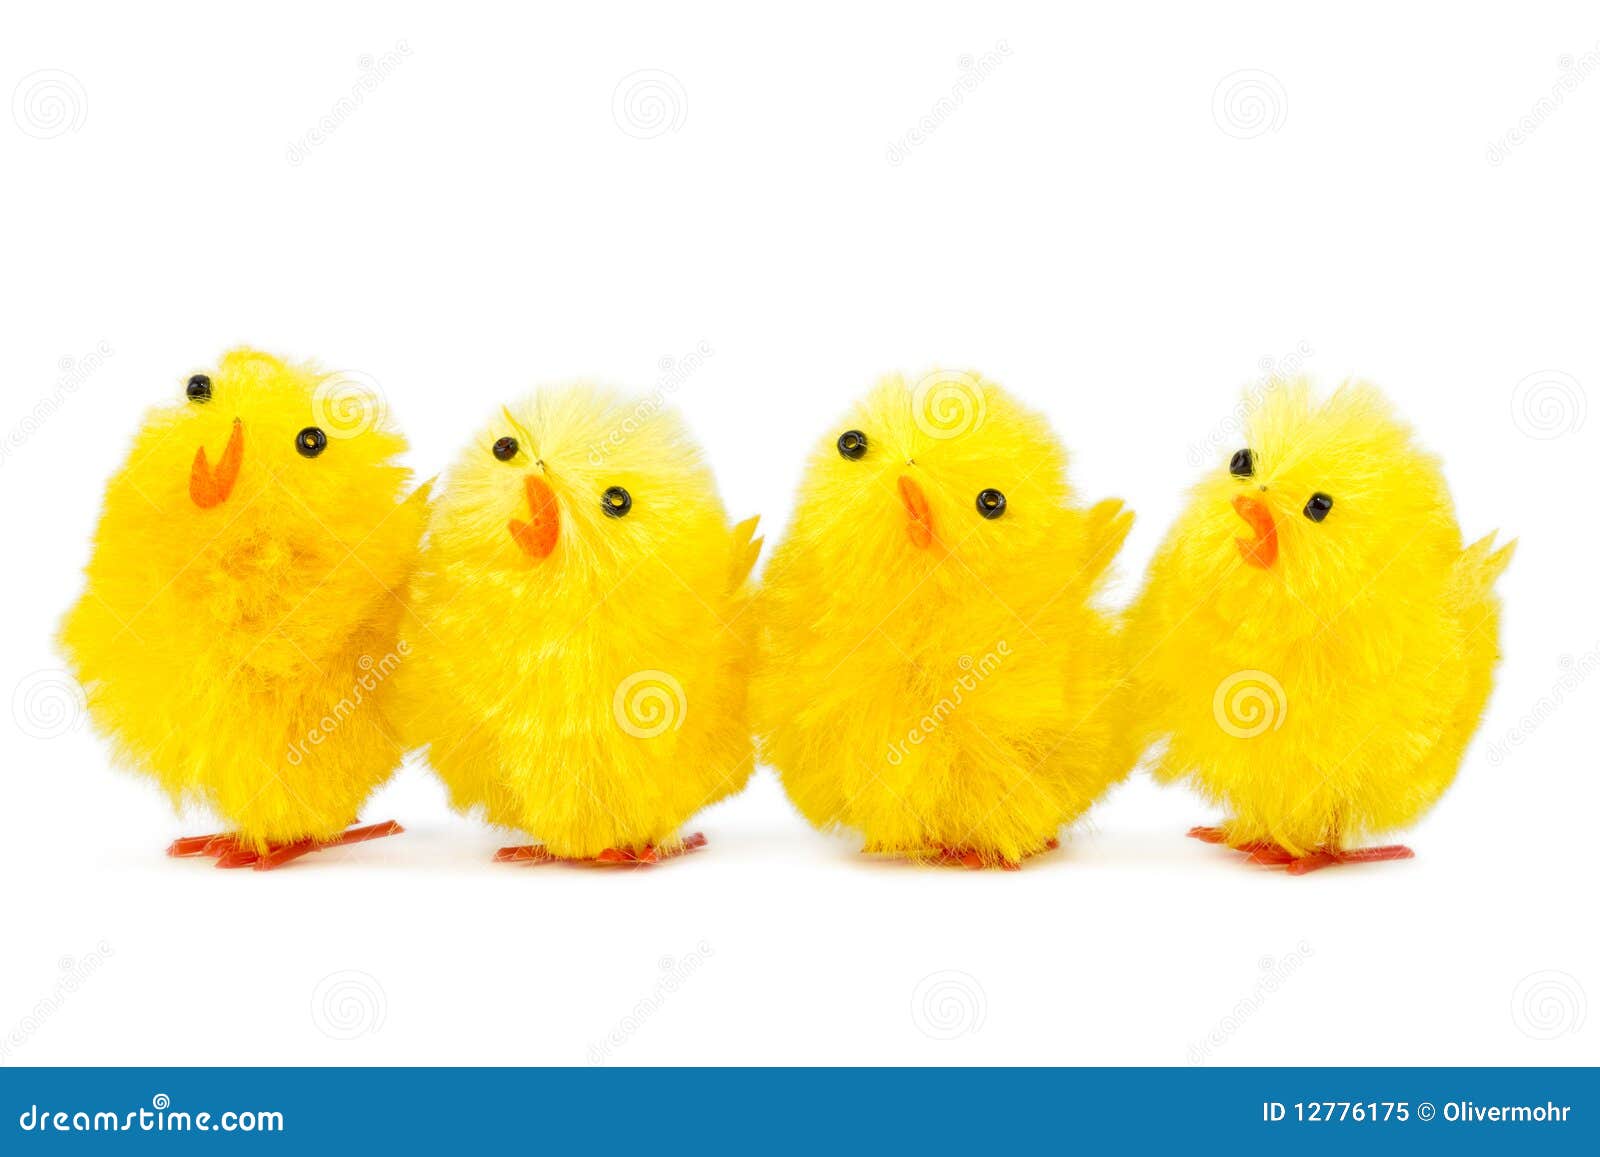 Четверо цыплят. Четыре цыпленка. 4 Цыпленка. Покажи четыре цыпленка или четырех цыплят. Картинка Пасха цыпленок на белом фоне маленький размер.